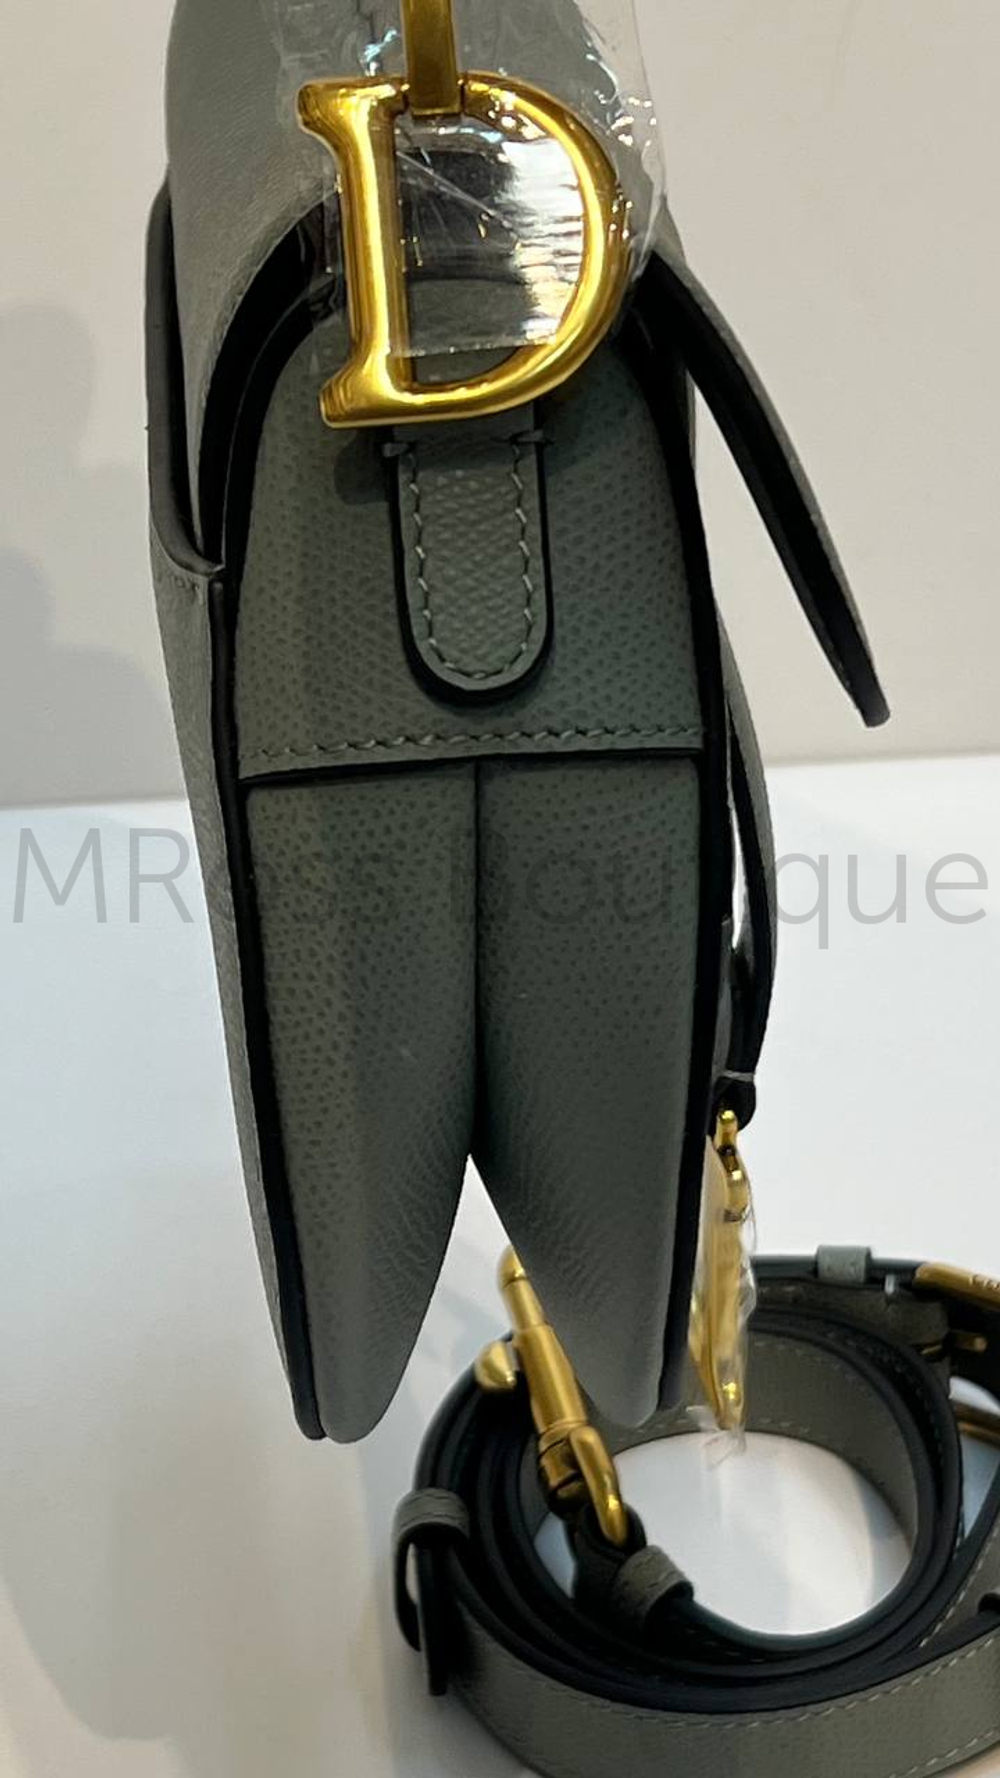 Сумка седло Dior Saddle серого цвета